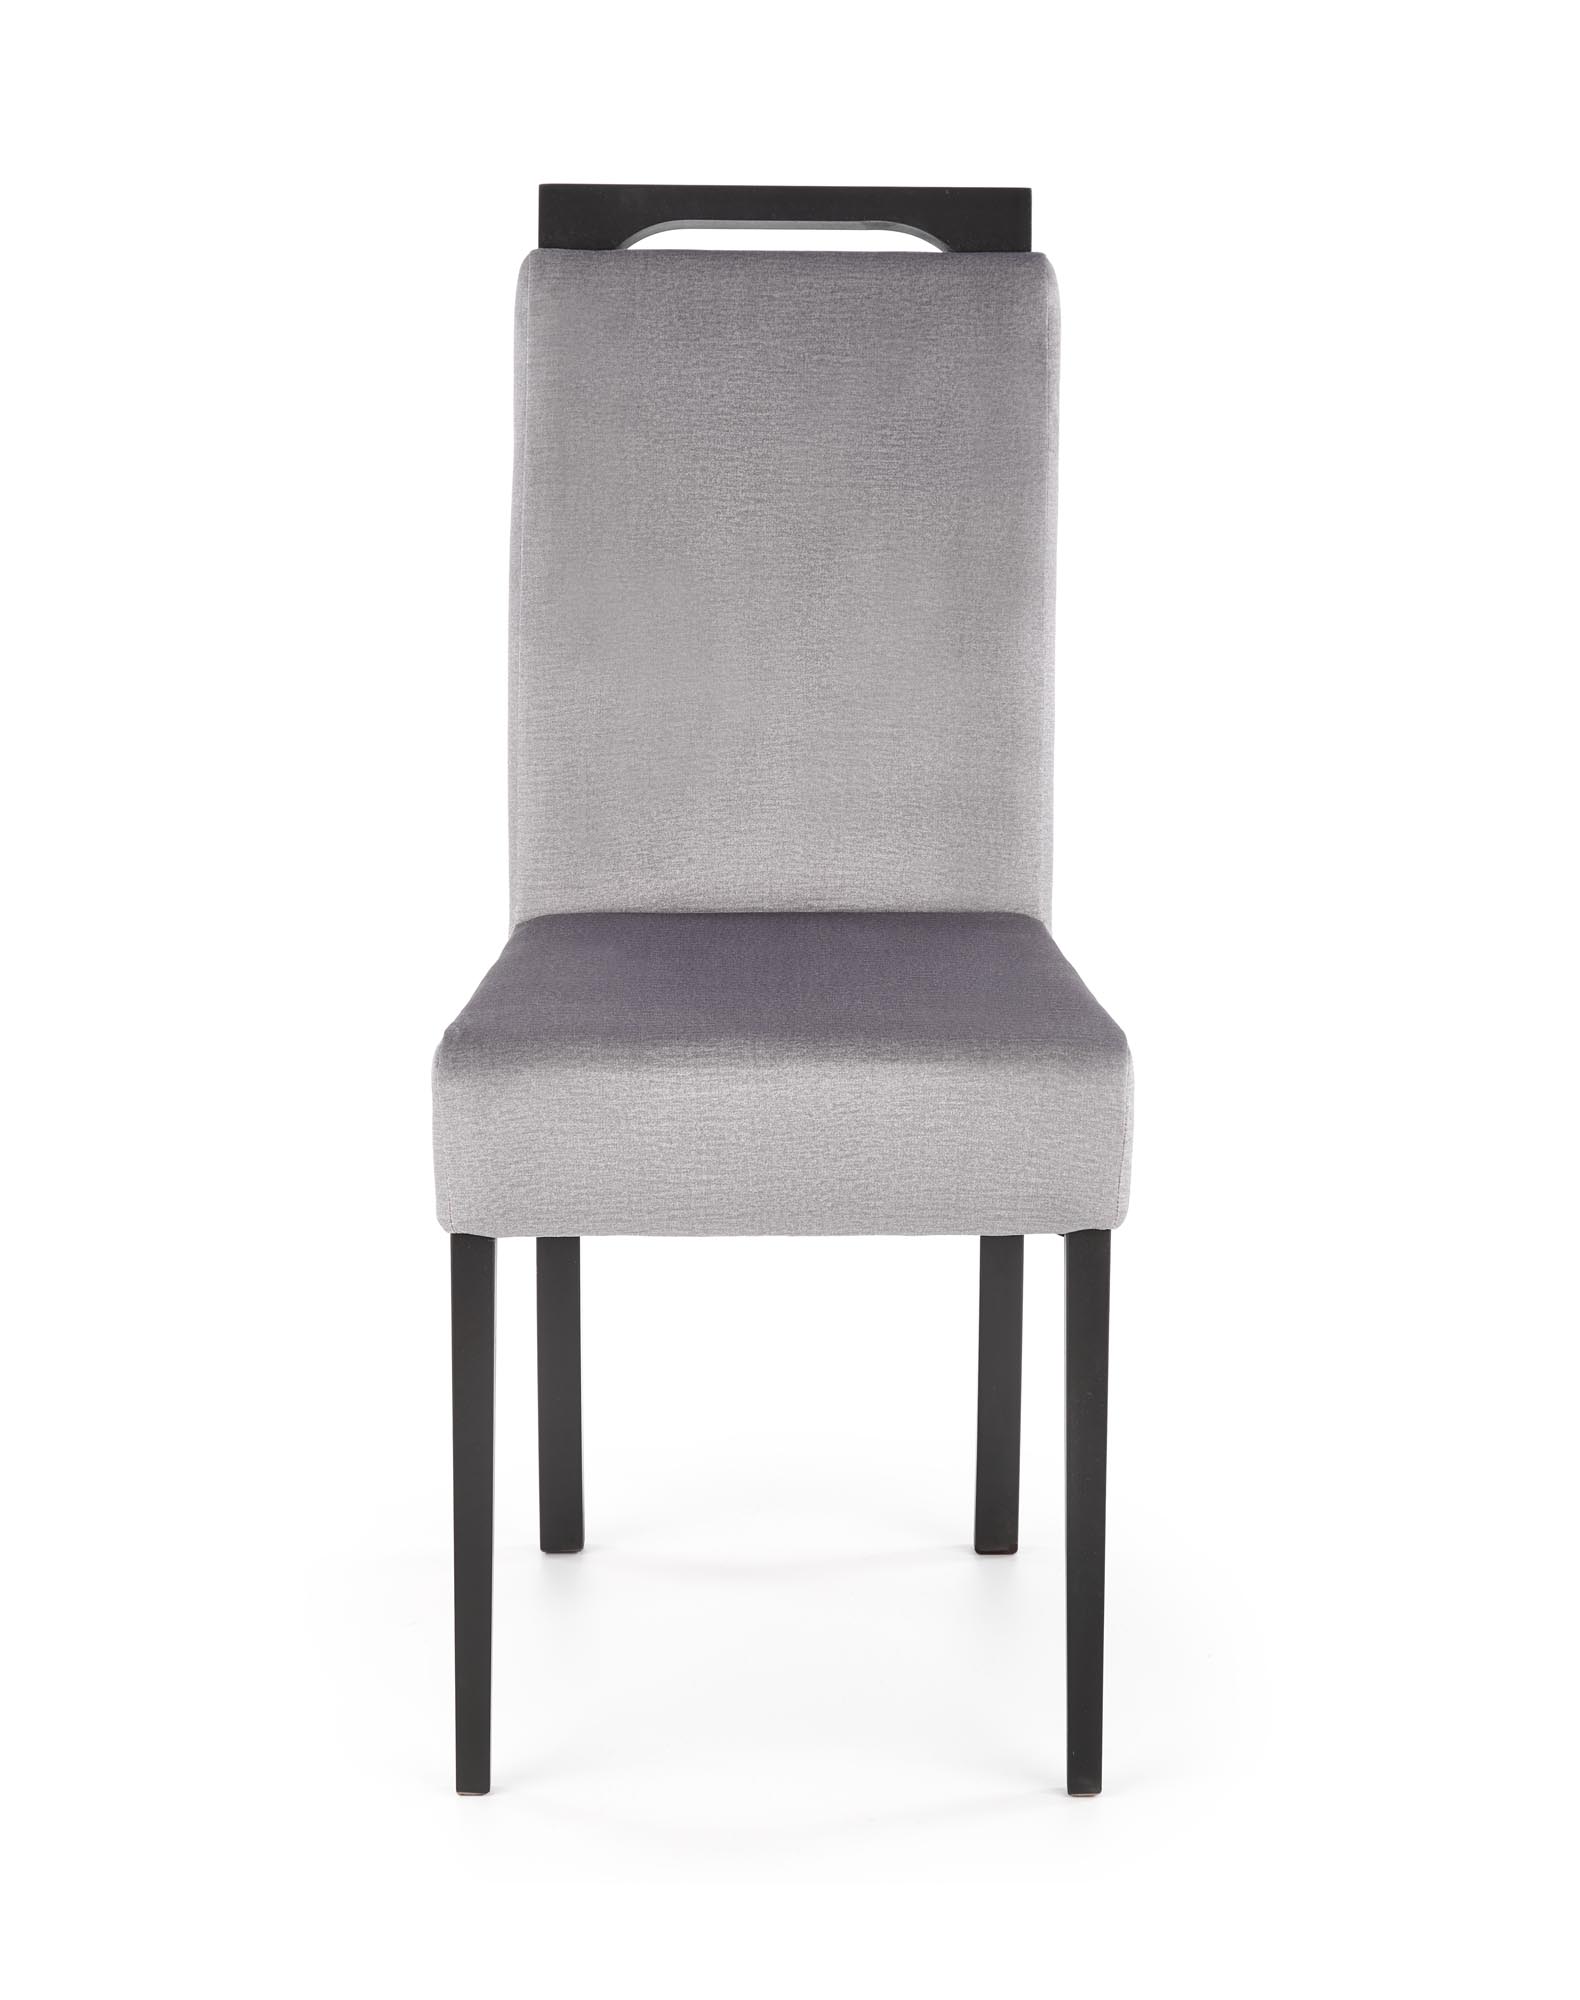 CLARION 2 szék - fekete, kárpitozott: MONOLITH 85 (hamu) clarion 2 Židle Fekete / tap: monolith 85 (popel)